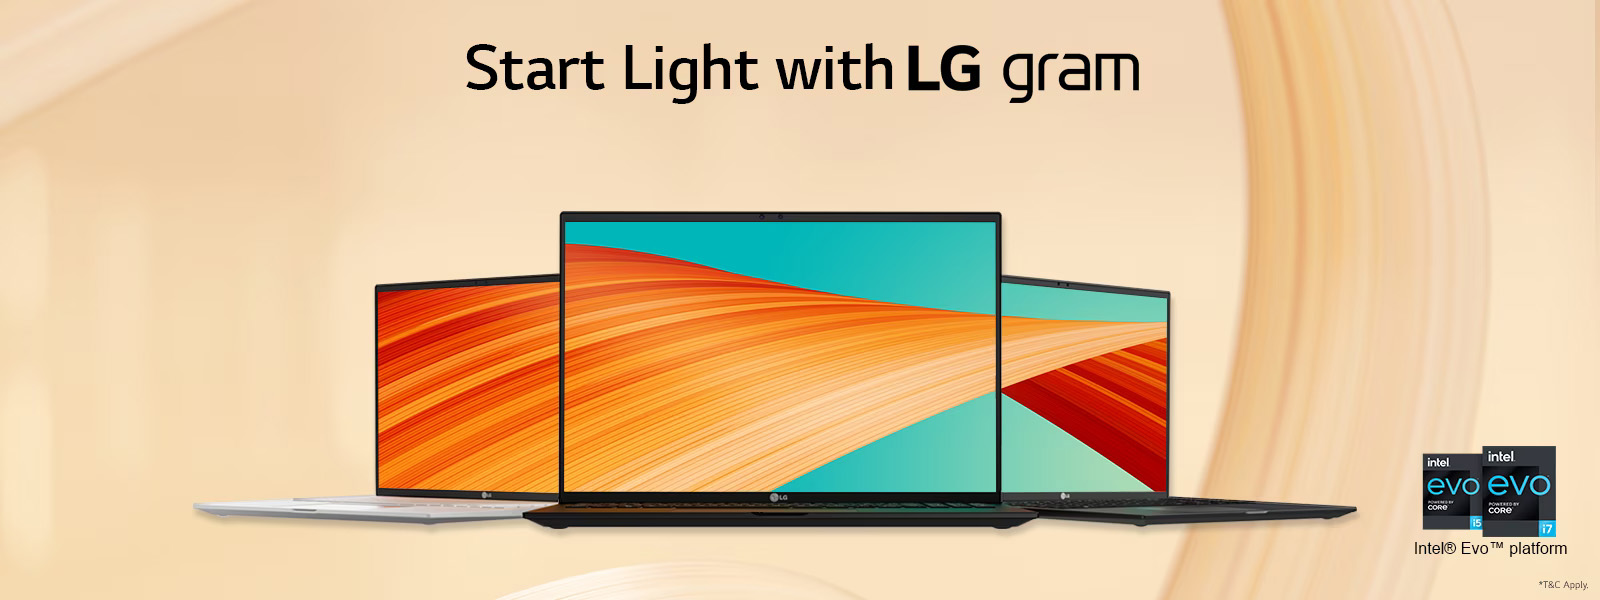 LG Gram Laptops